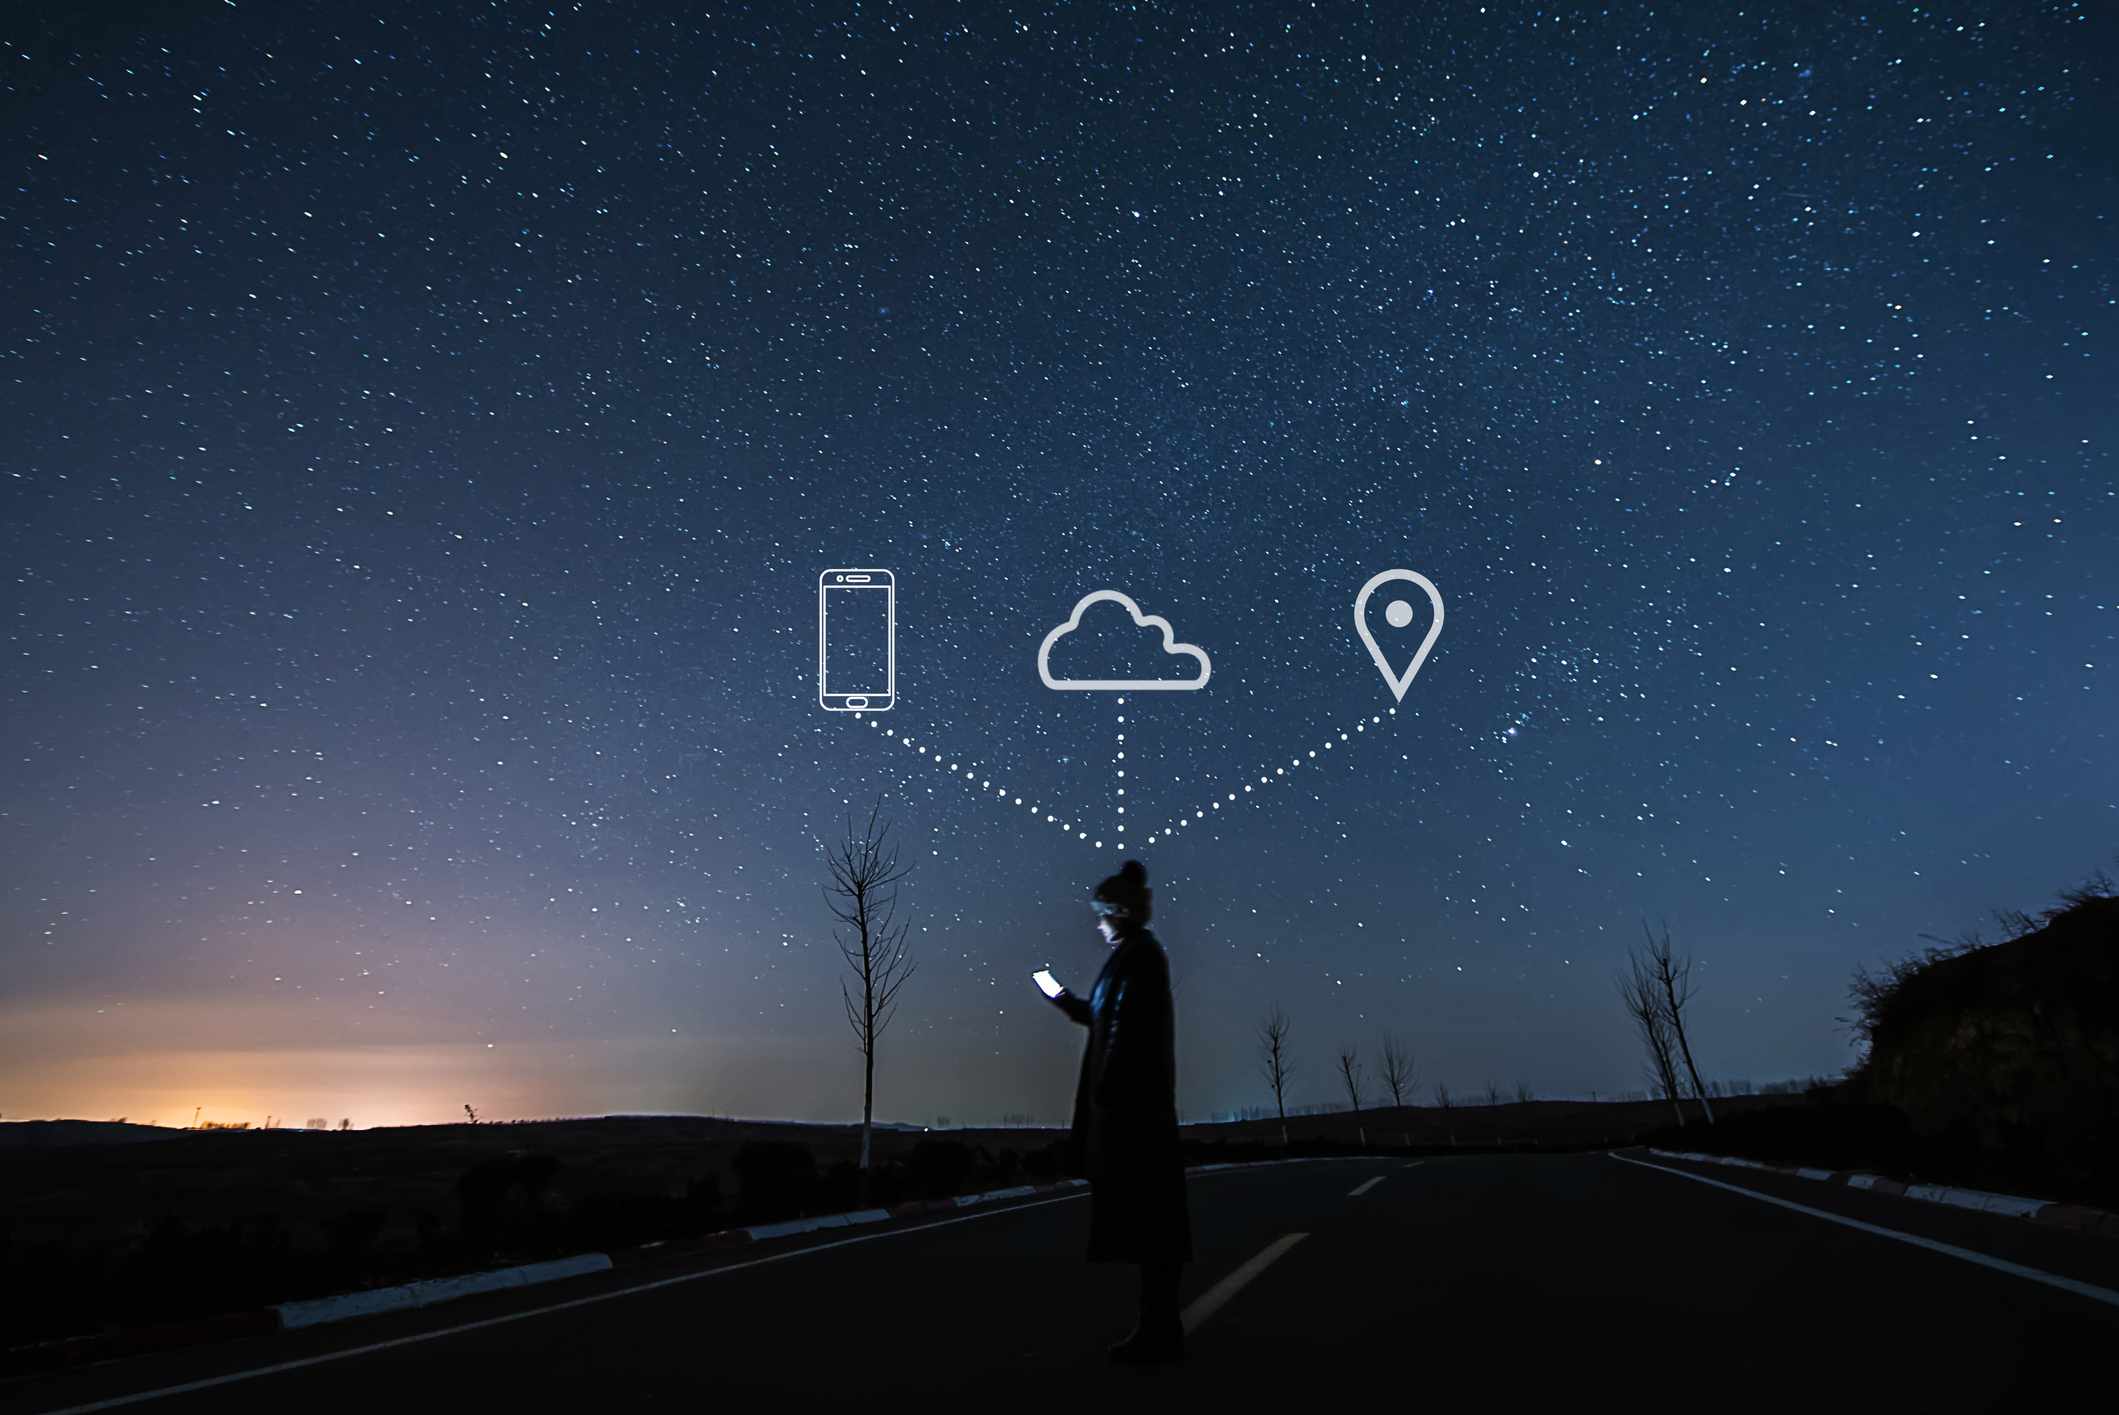 Iemand die een smartphone gebruikt op een sterrennacht, met telefoon-, cloud- en kaartpictogrammen in de lucht erboven.